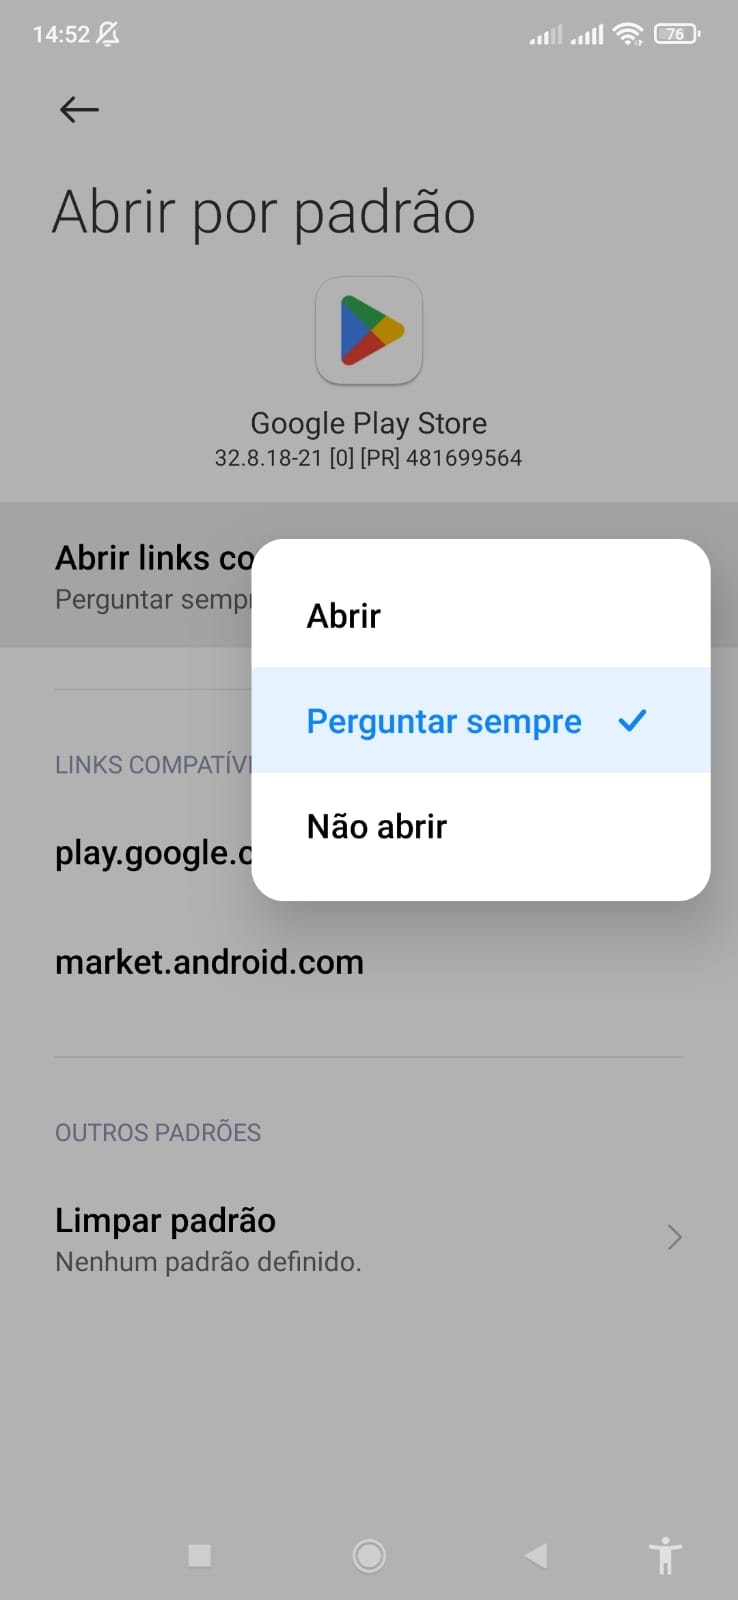 Erro em abrir links? - Comunidade Google Play